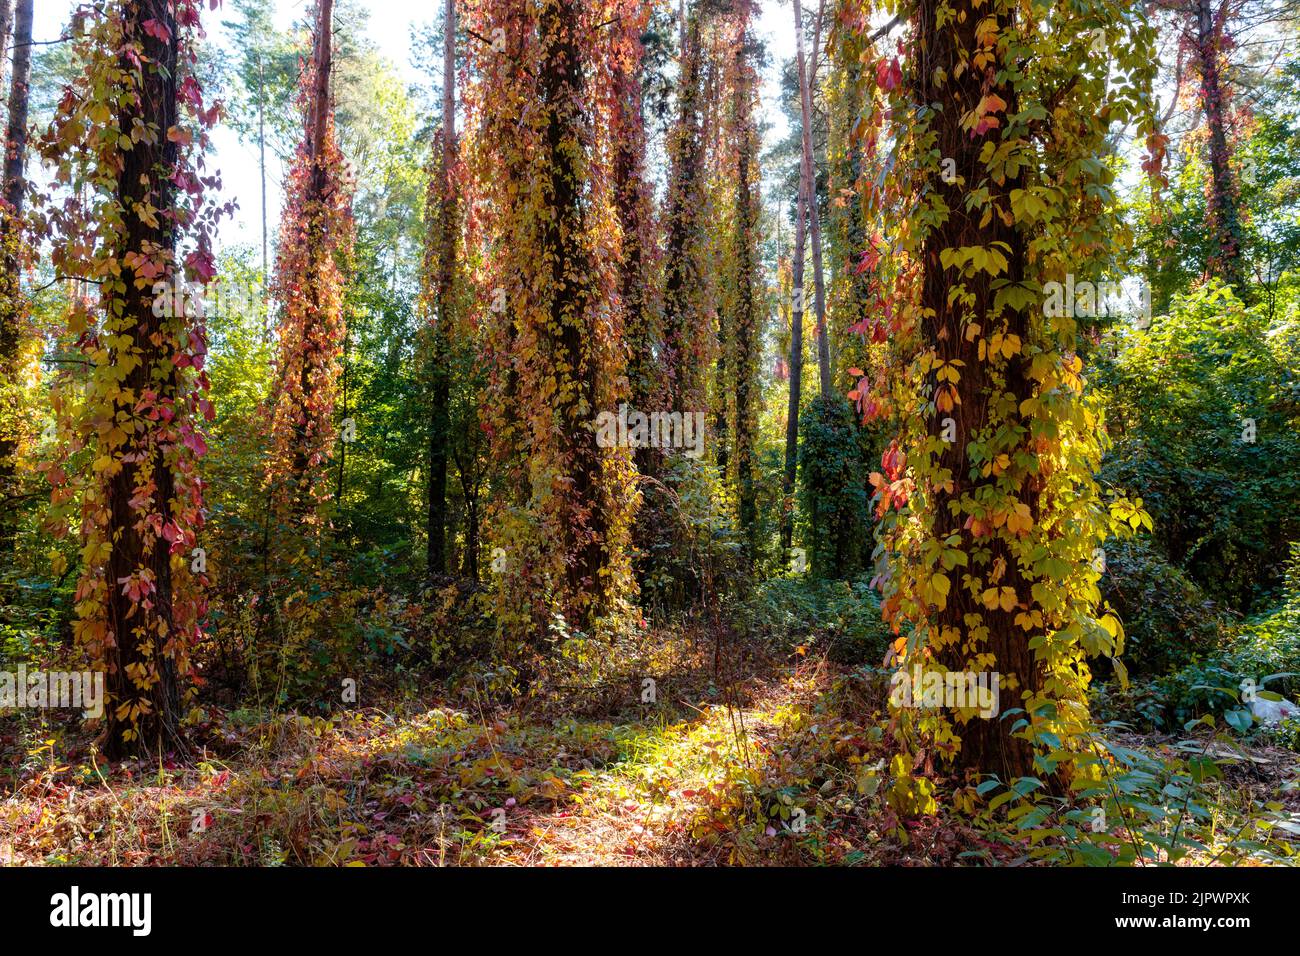 Alter Herbstwald mit Baumstämmen, die von lebhaften, farbenfrohen, wilden Weinreben bedeckt sind Stockfoto